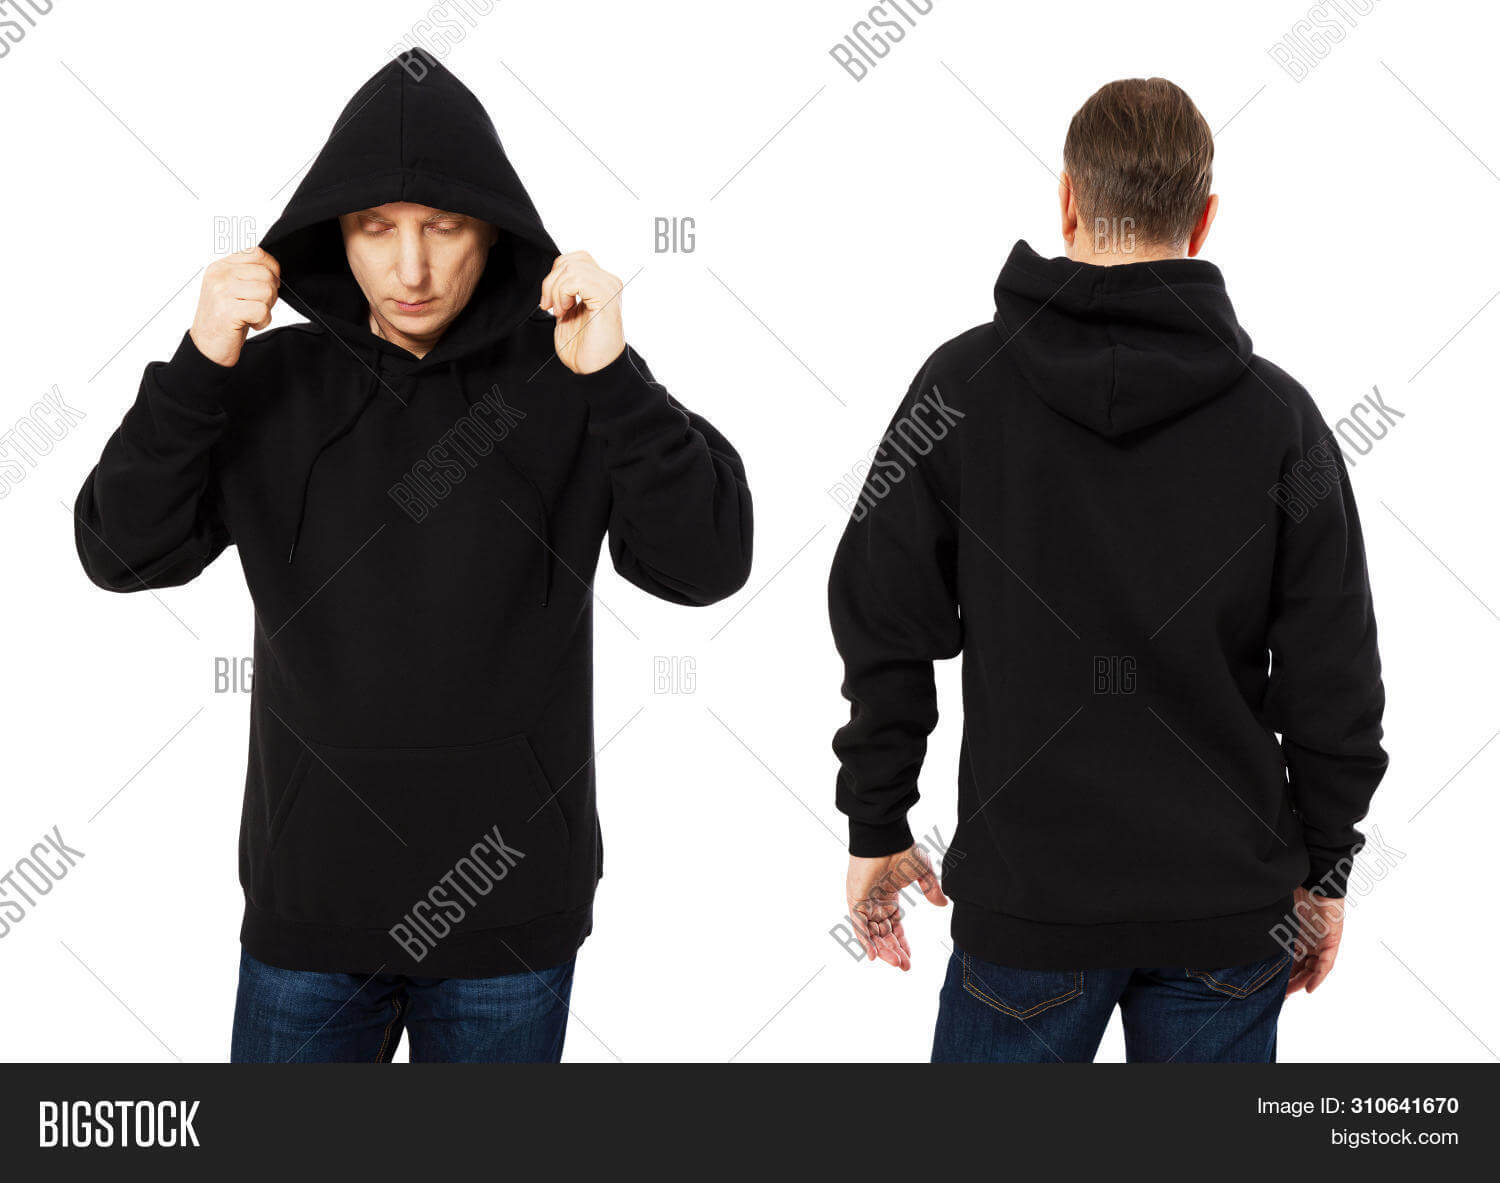 Man Template Mens Image & Photo (Free Trial) | Bigstock Inside Blank Black Hoodie Template